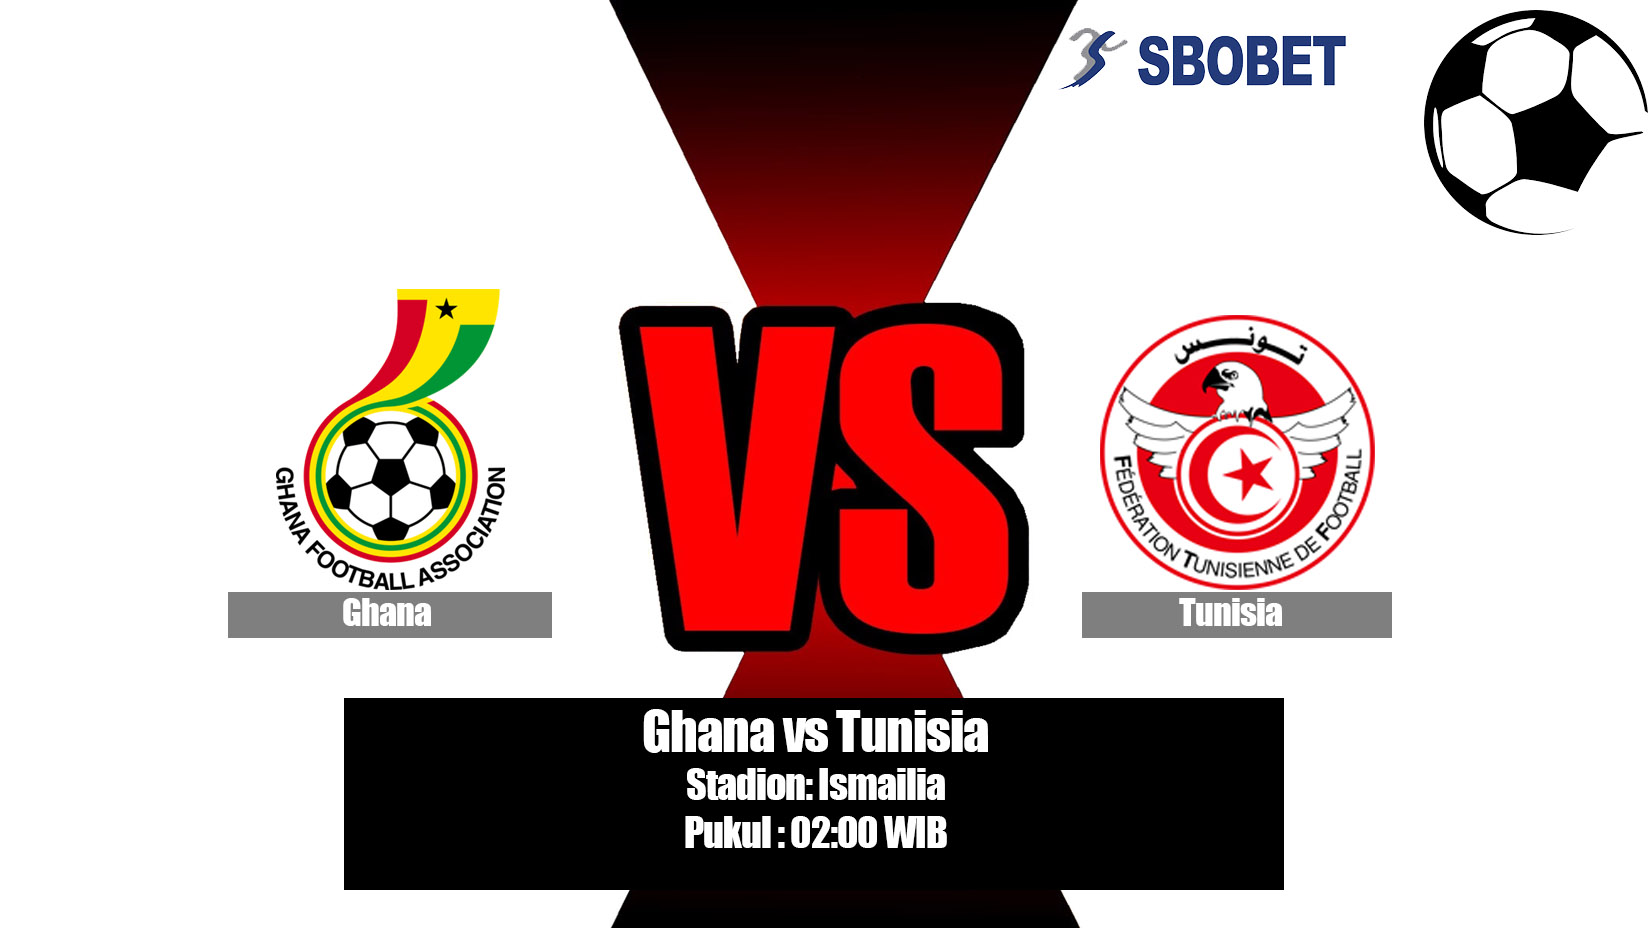 Prediksi Bola Ghana vs Tunisia 9 Juli 2019.jpg